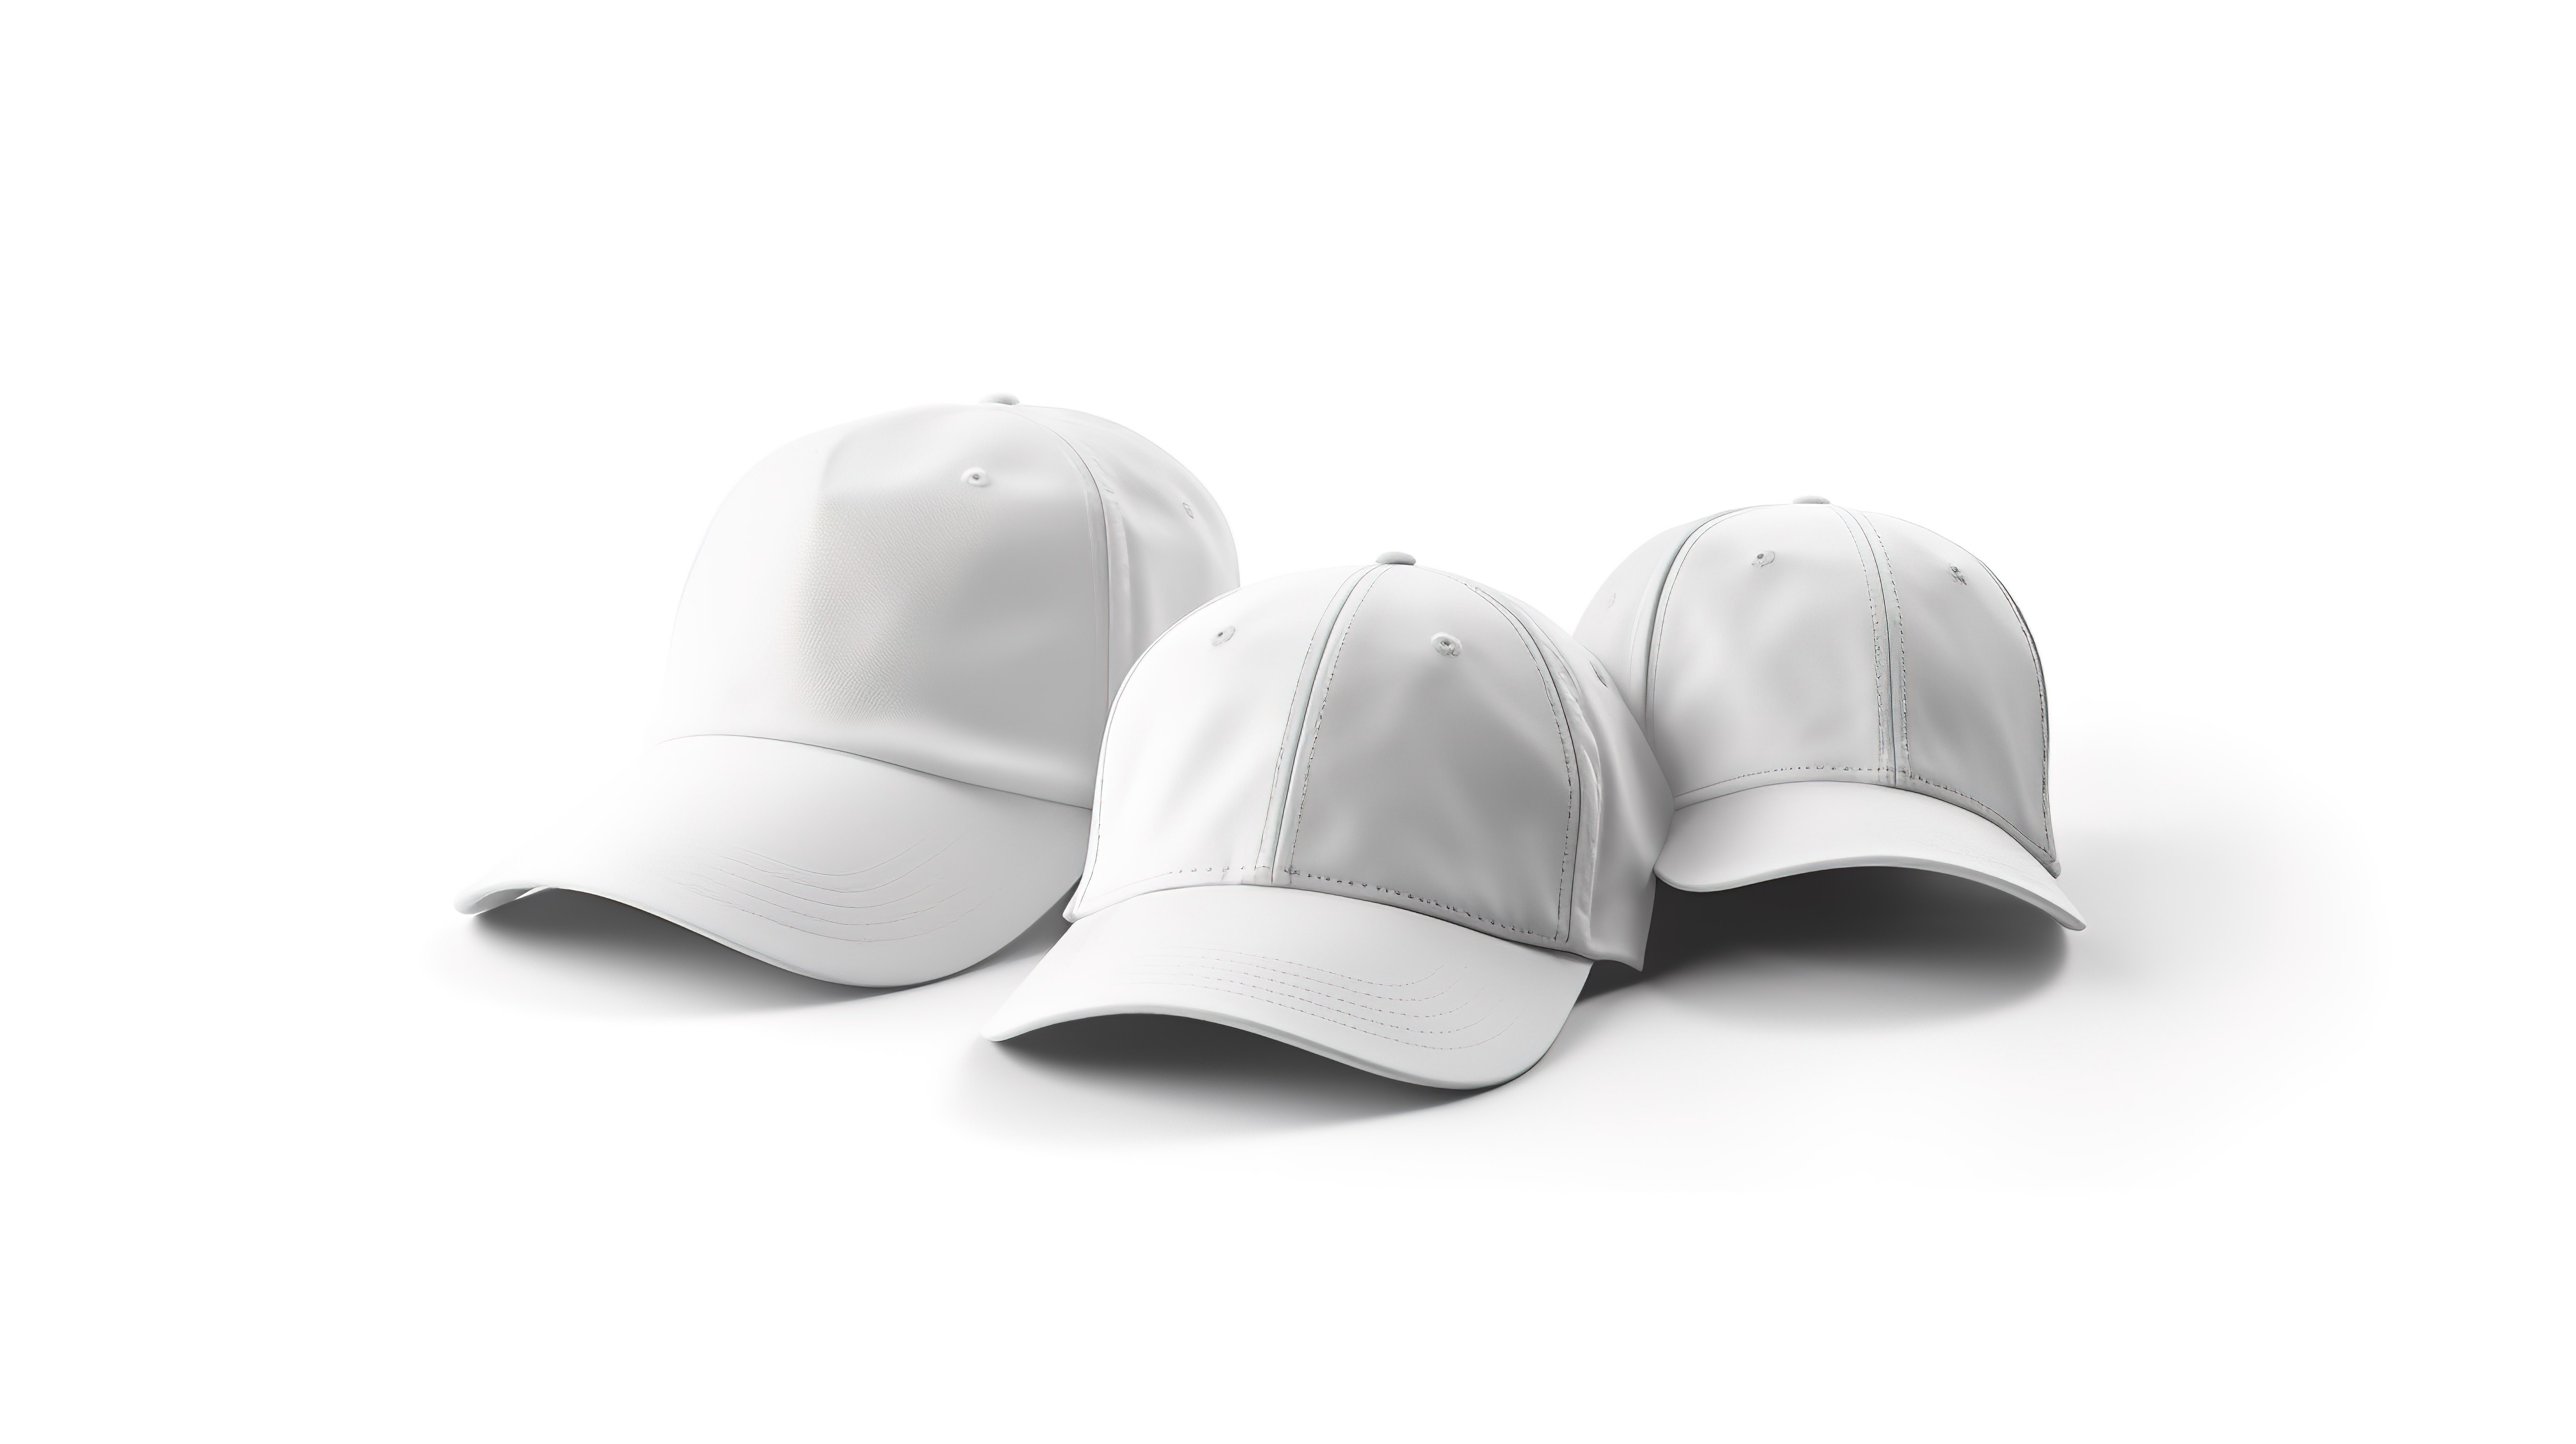 多功能白色制服帽子或帽子模型在 3D 渲染的空白白色背景上展示不同角度图片